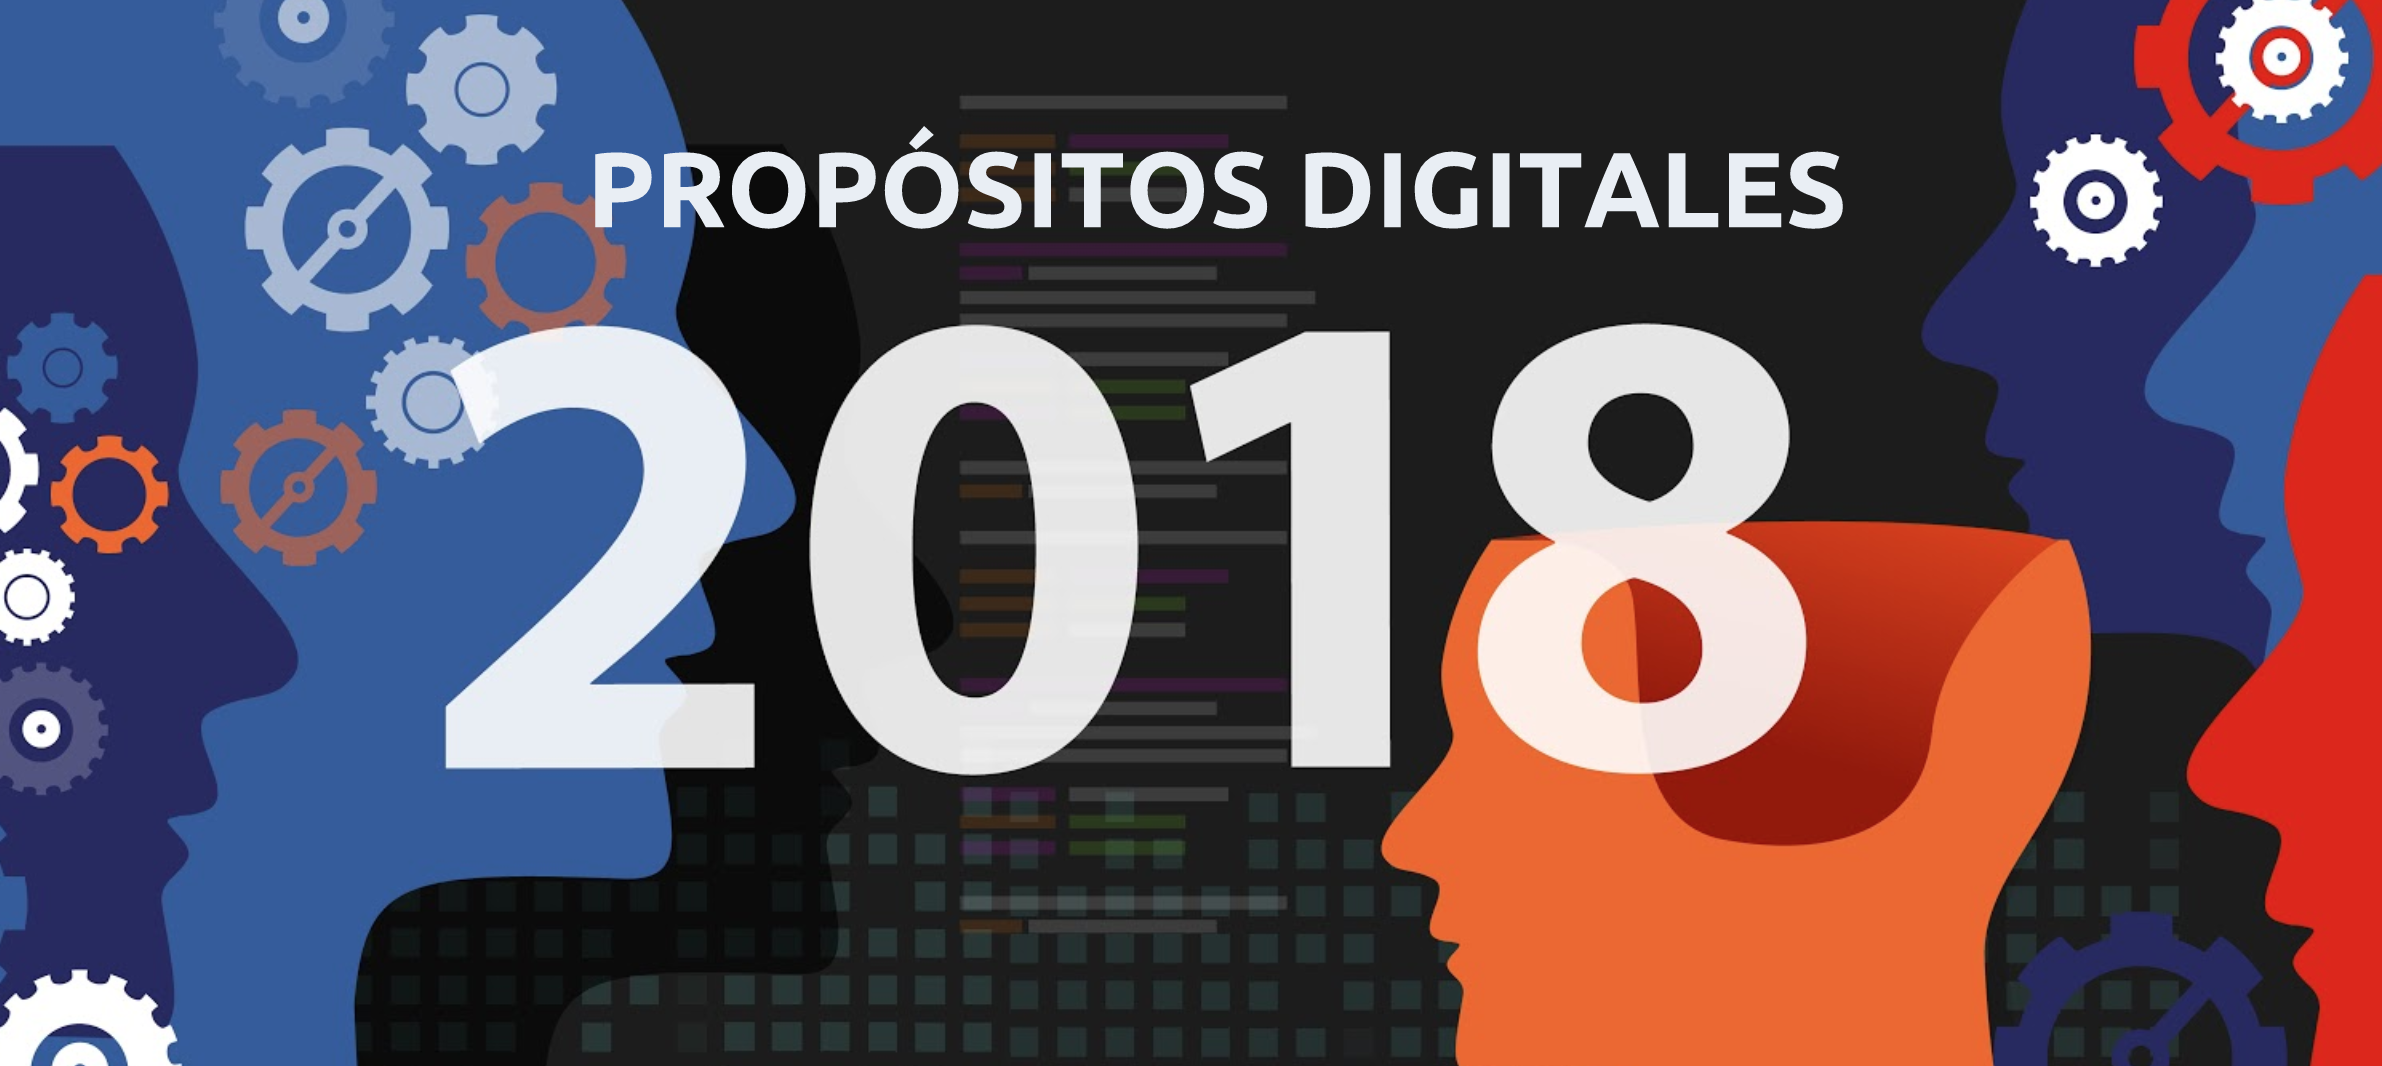 12 Propósitos Digitales para el 2018 – Plan Digital